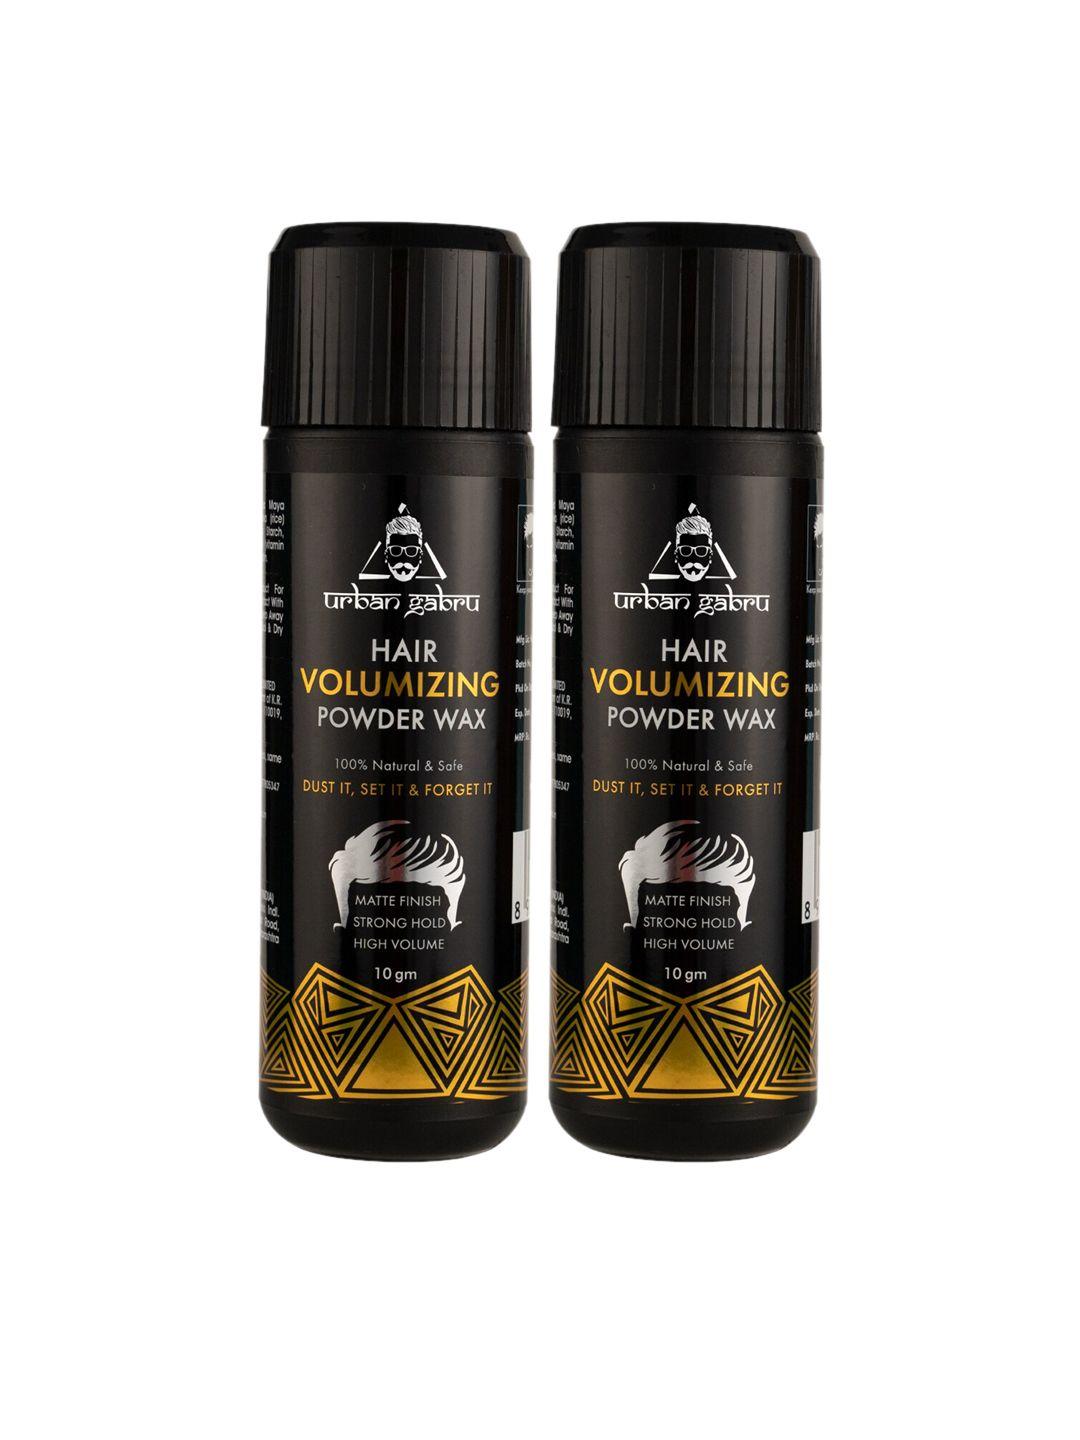 urbangabru pack of 2 hair volumizing natural & safe hair styling powder wax